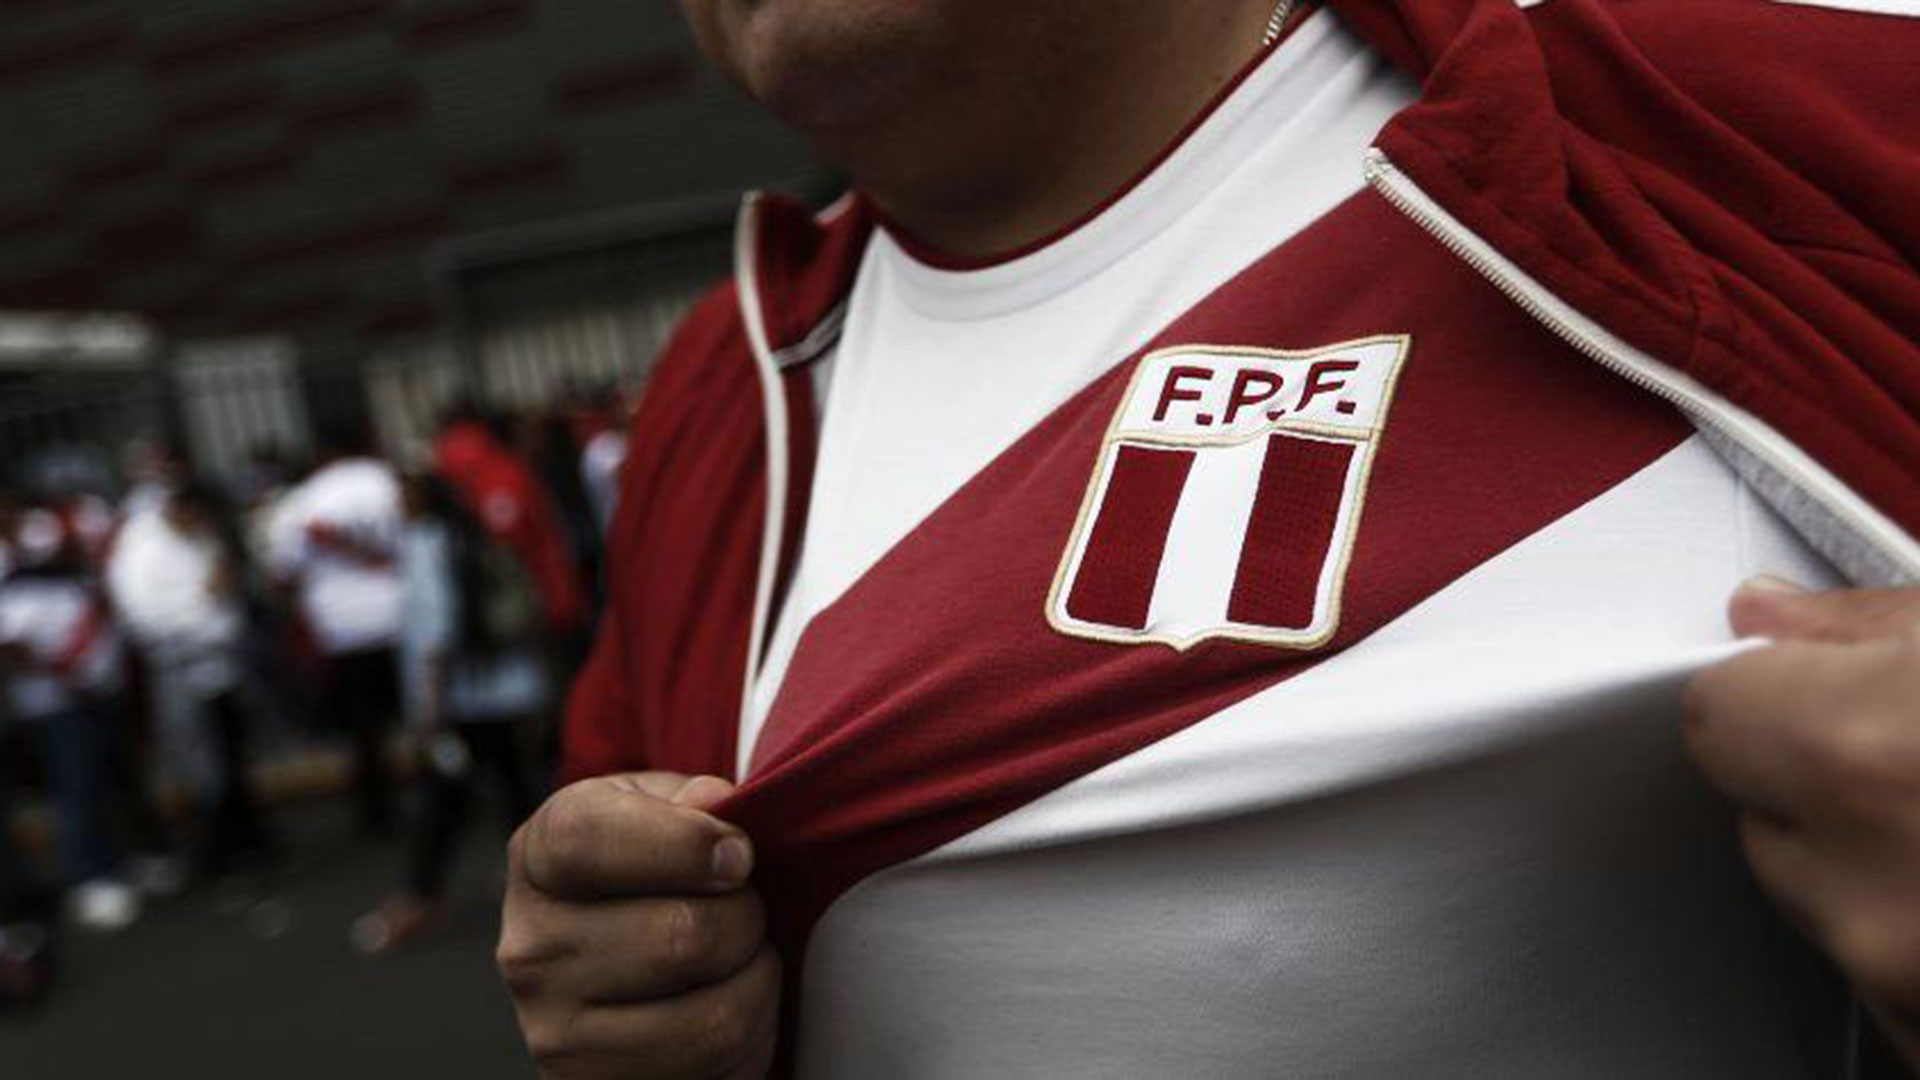 Federación Peruana de Fútbol: "Ninguna persona ajena viajó solventada por la FPF"